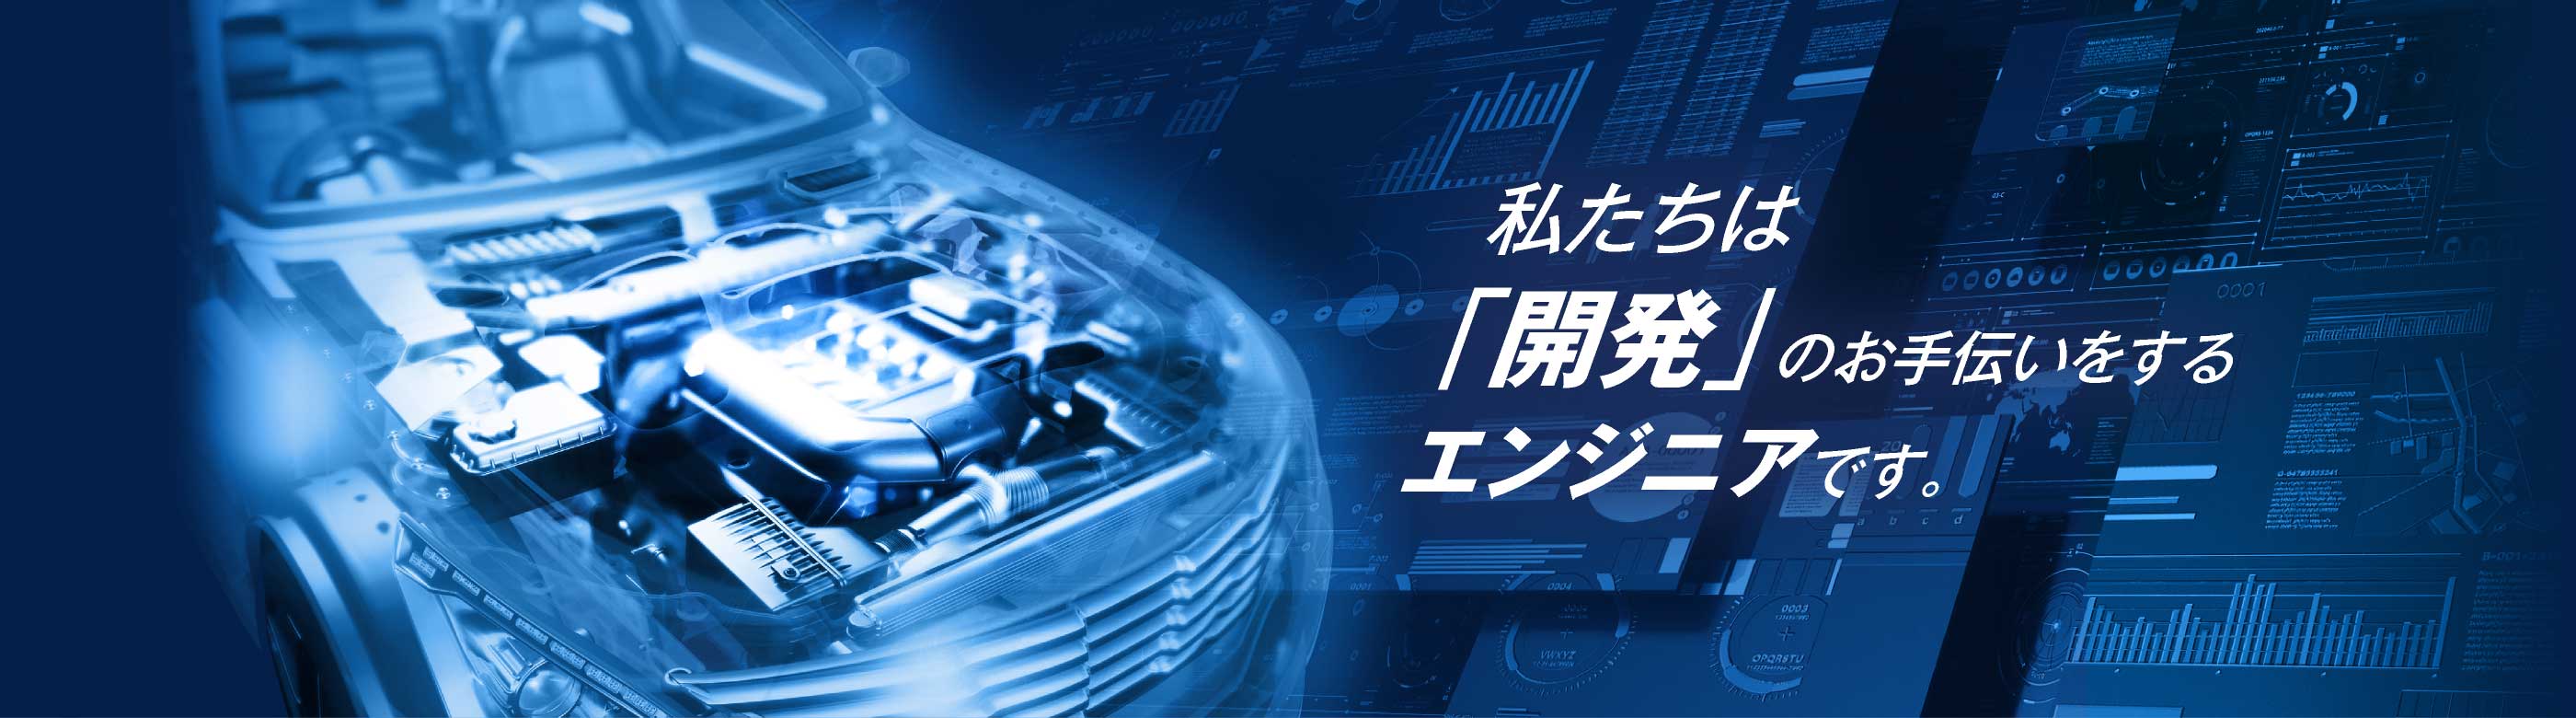 株式会社ユニテックは、茨木市の会社です。私たちは開発のお手伝いをするエンジニアです。